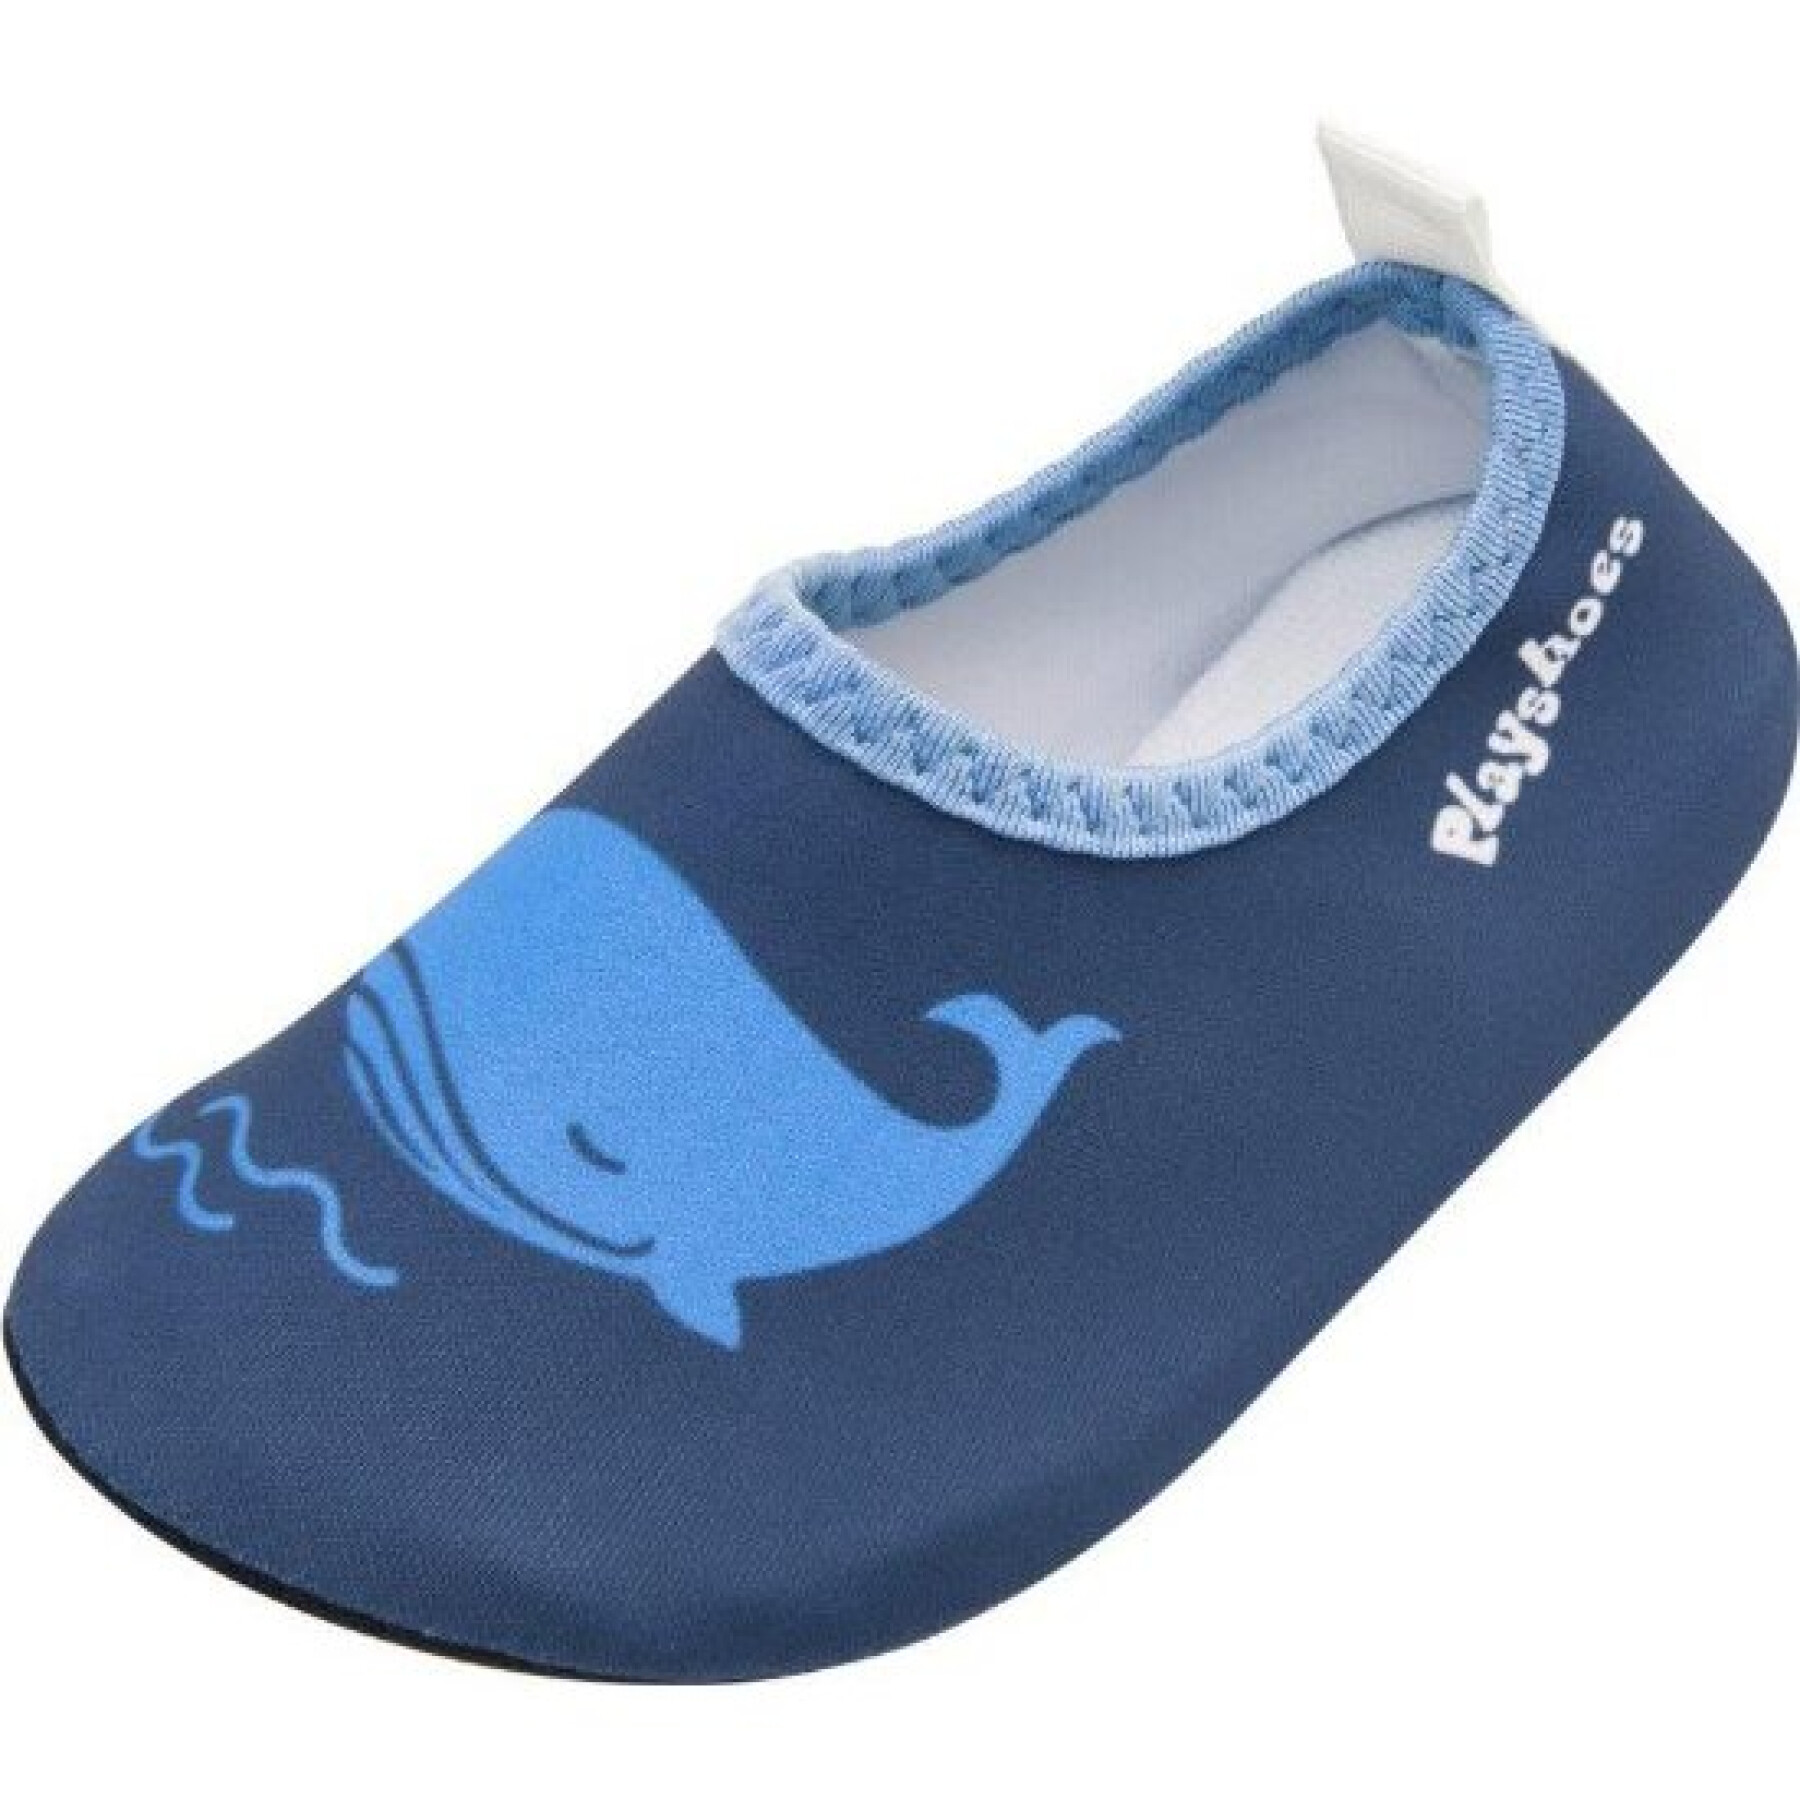 Chaussons aquatiques enfant Playshoes Whale